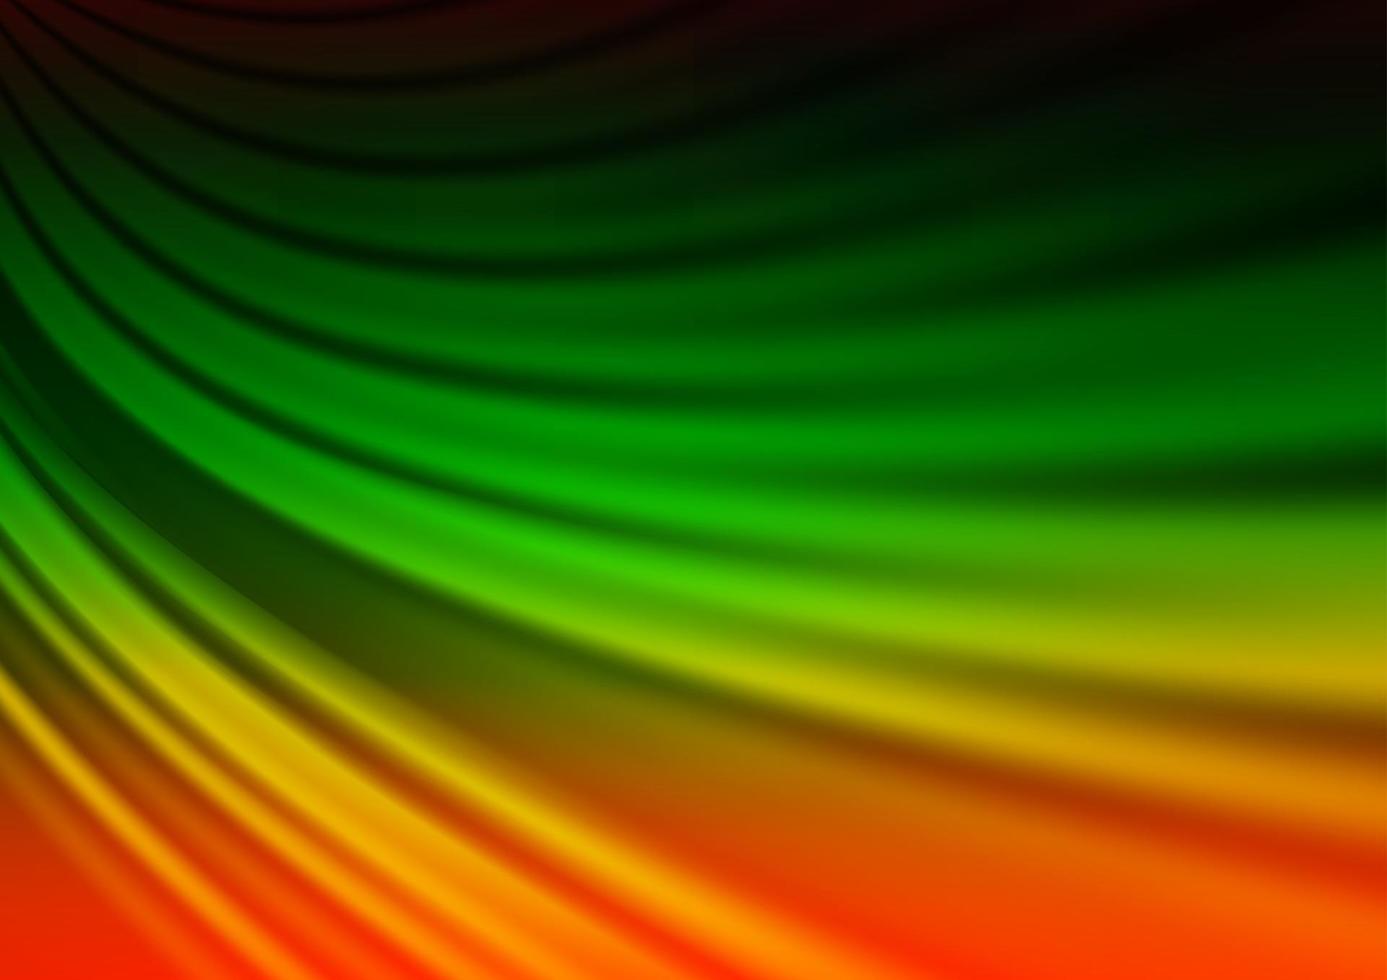 multicolore scuro, modello luminoso astratto di vettore arcobaleno.